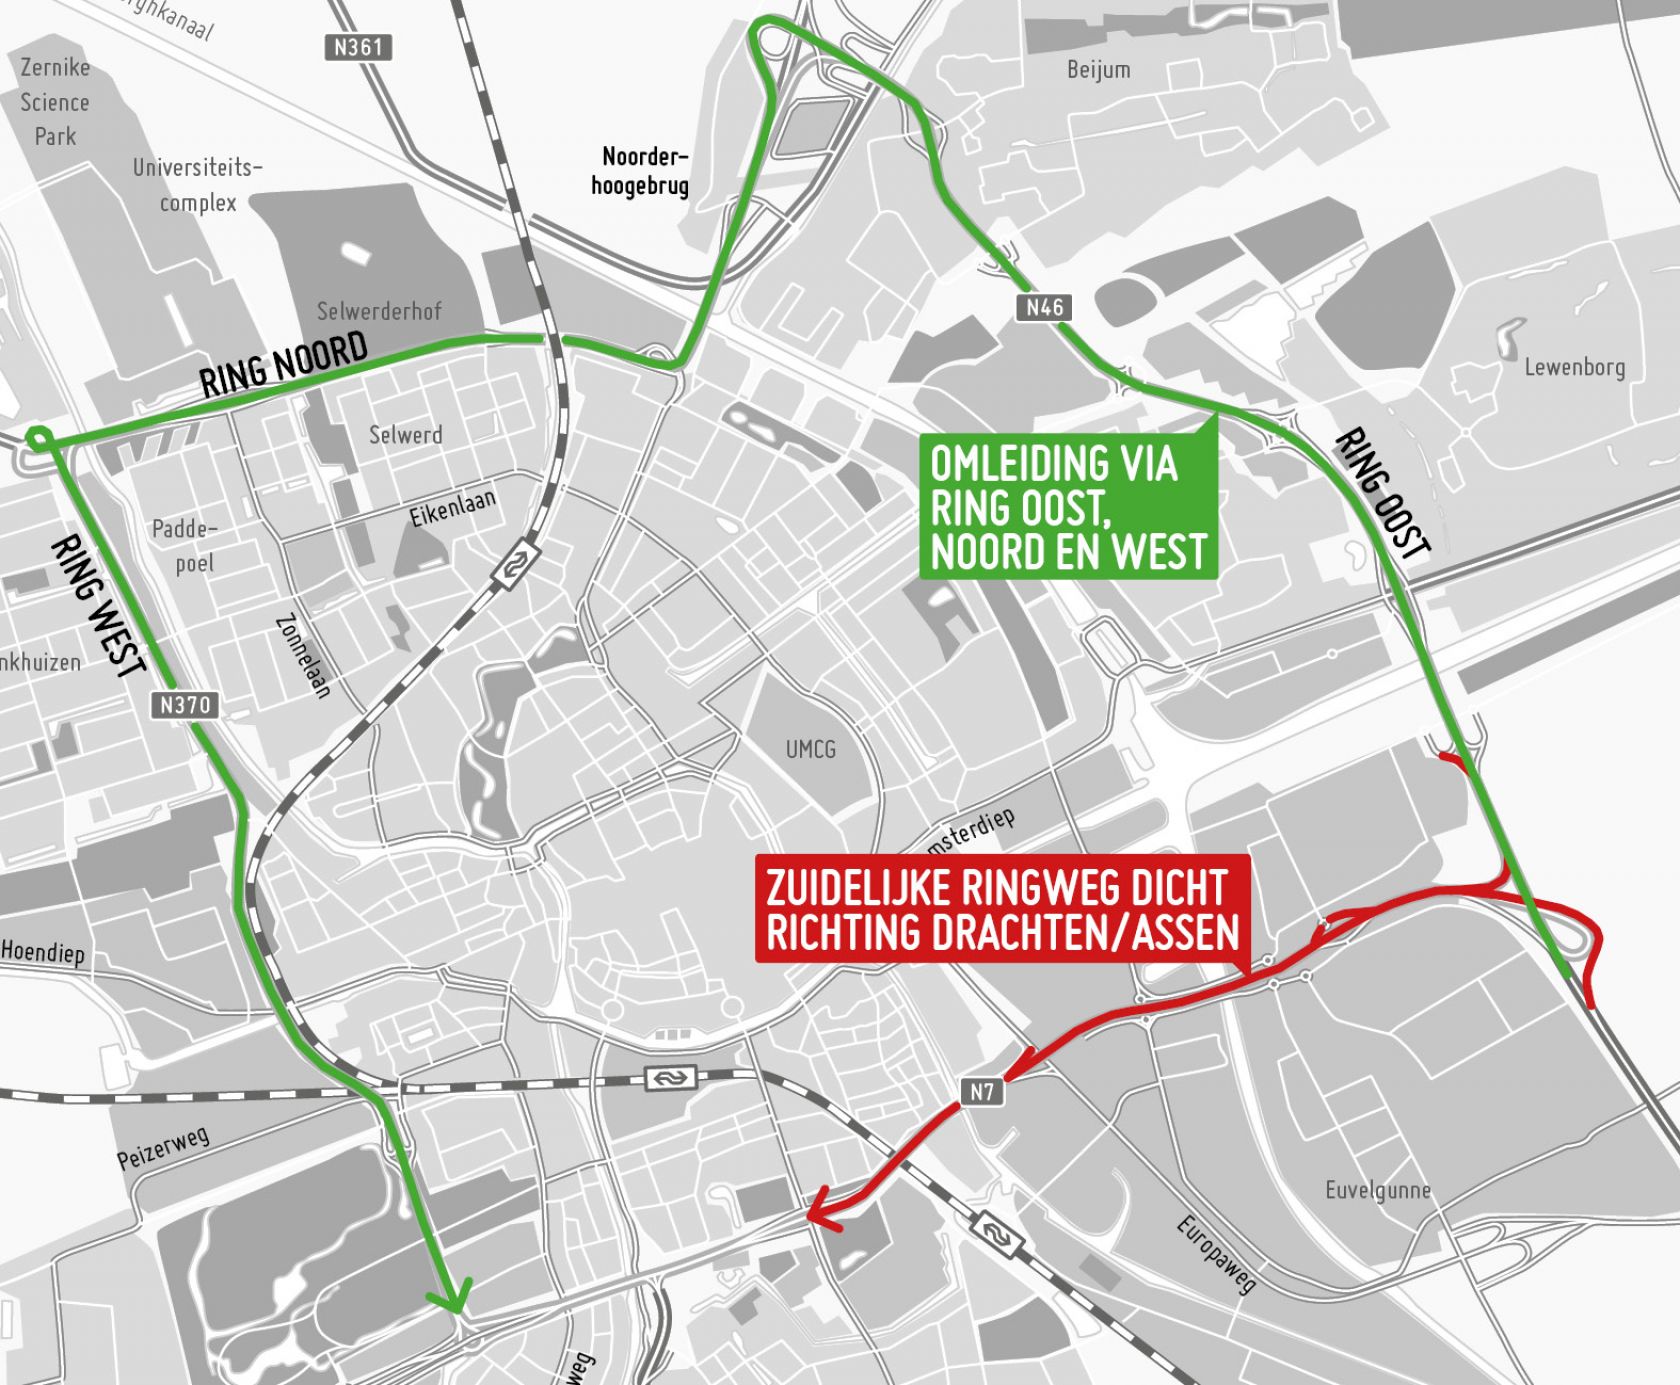 De zuidelijke ringweg wordt afgesloten (rood) voor verkeer richting Drachten/Assen. Verkeer wordt omgeleid via de overige ringwegen (groen).